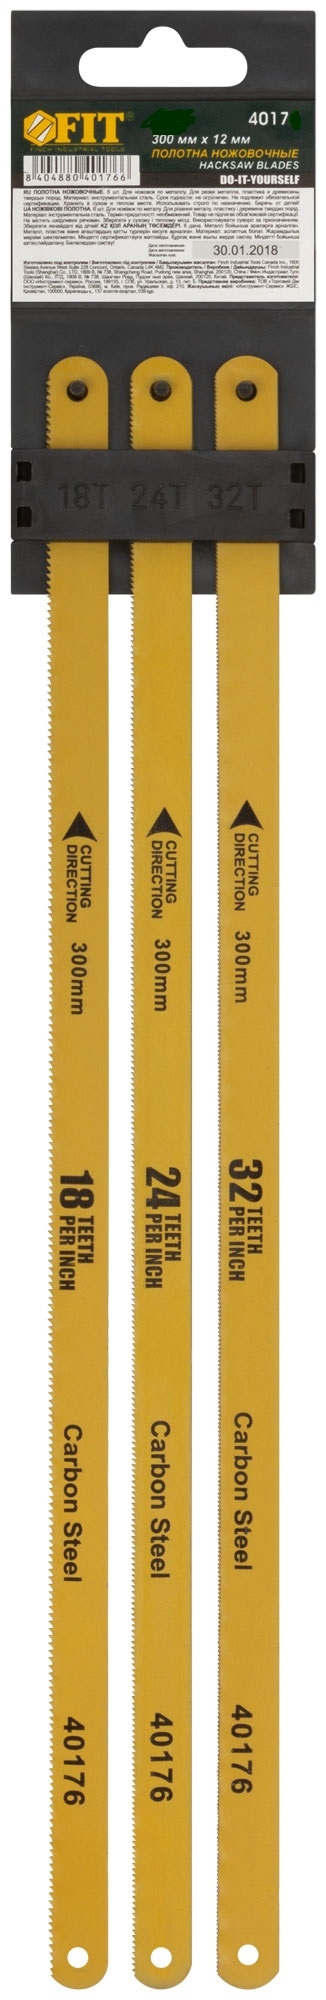 Полотна ножовочные по металлу, 300 мм, (18ТPI+24ТPI+32ТPI/20Cr ), 3 шт. FIT 40175 полотна по металлу для ножовки stayer